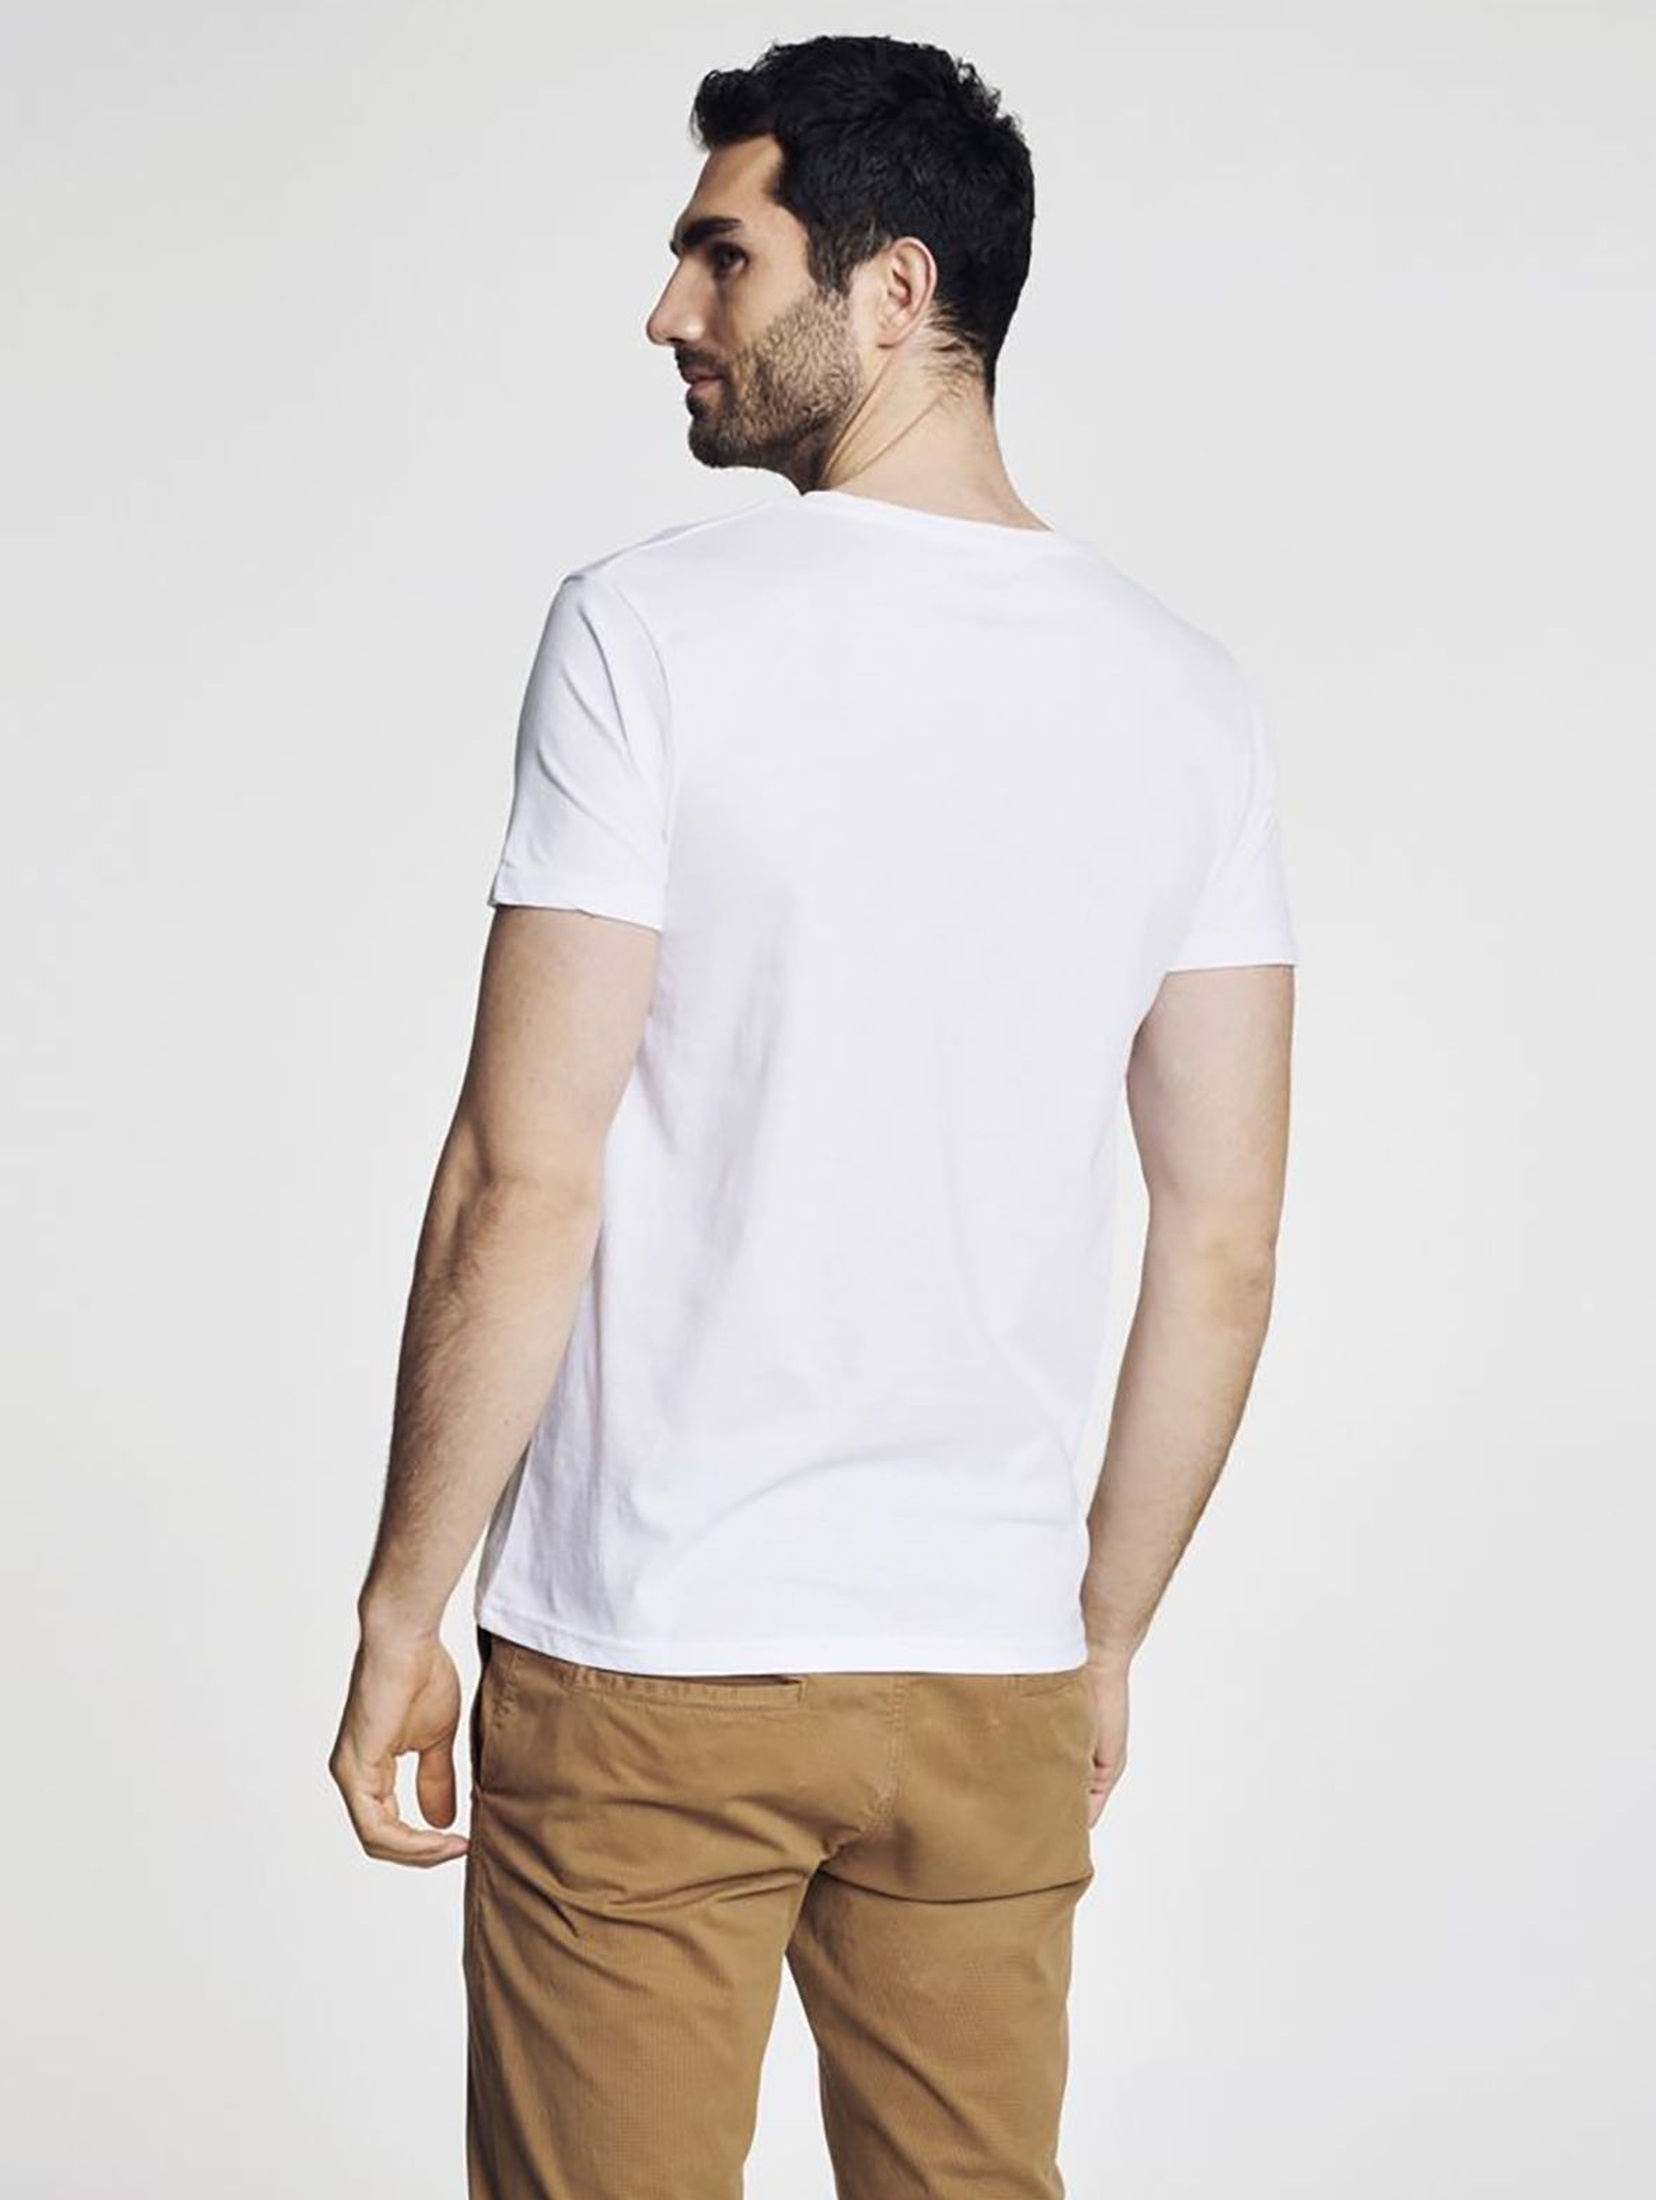 T-shirt męski biały OCHNIK